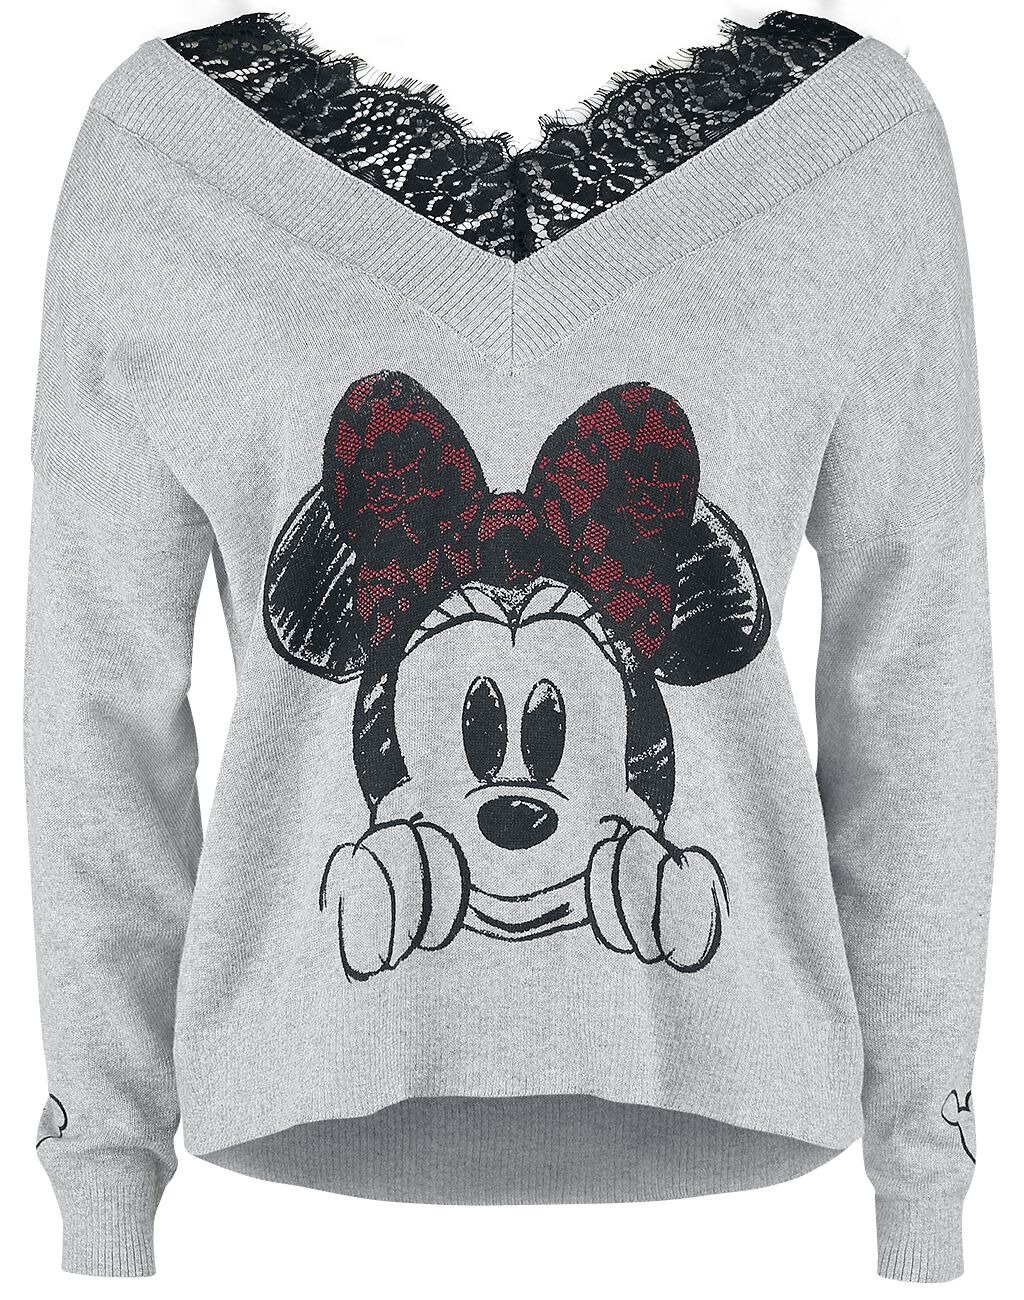 Mickey Mouse - Disney Sweatshirt - Minnie Maus - S bis XL - für Damen - Größe M - grau meliert  - EMP exklusives Merchandise!